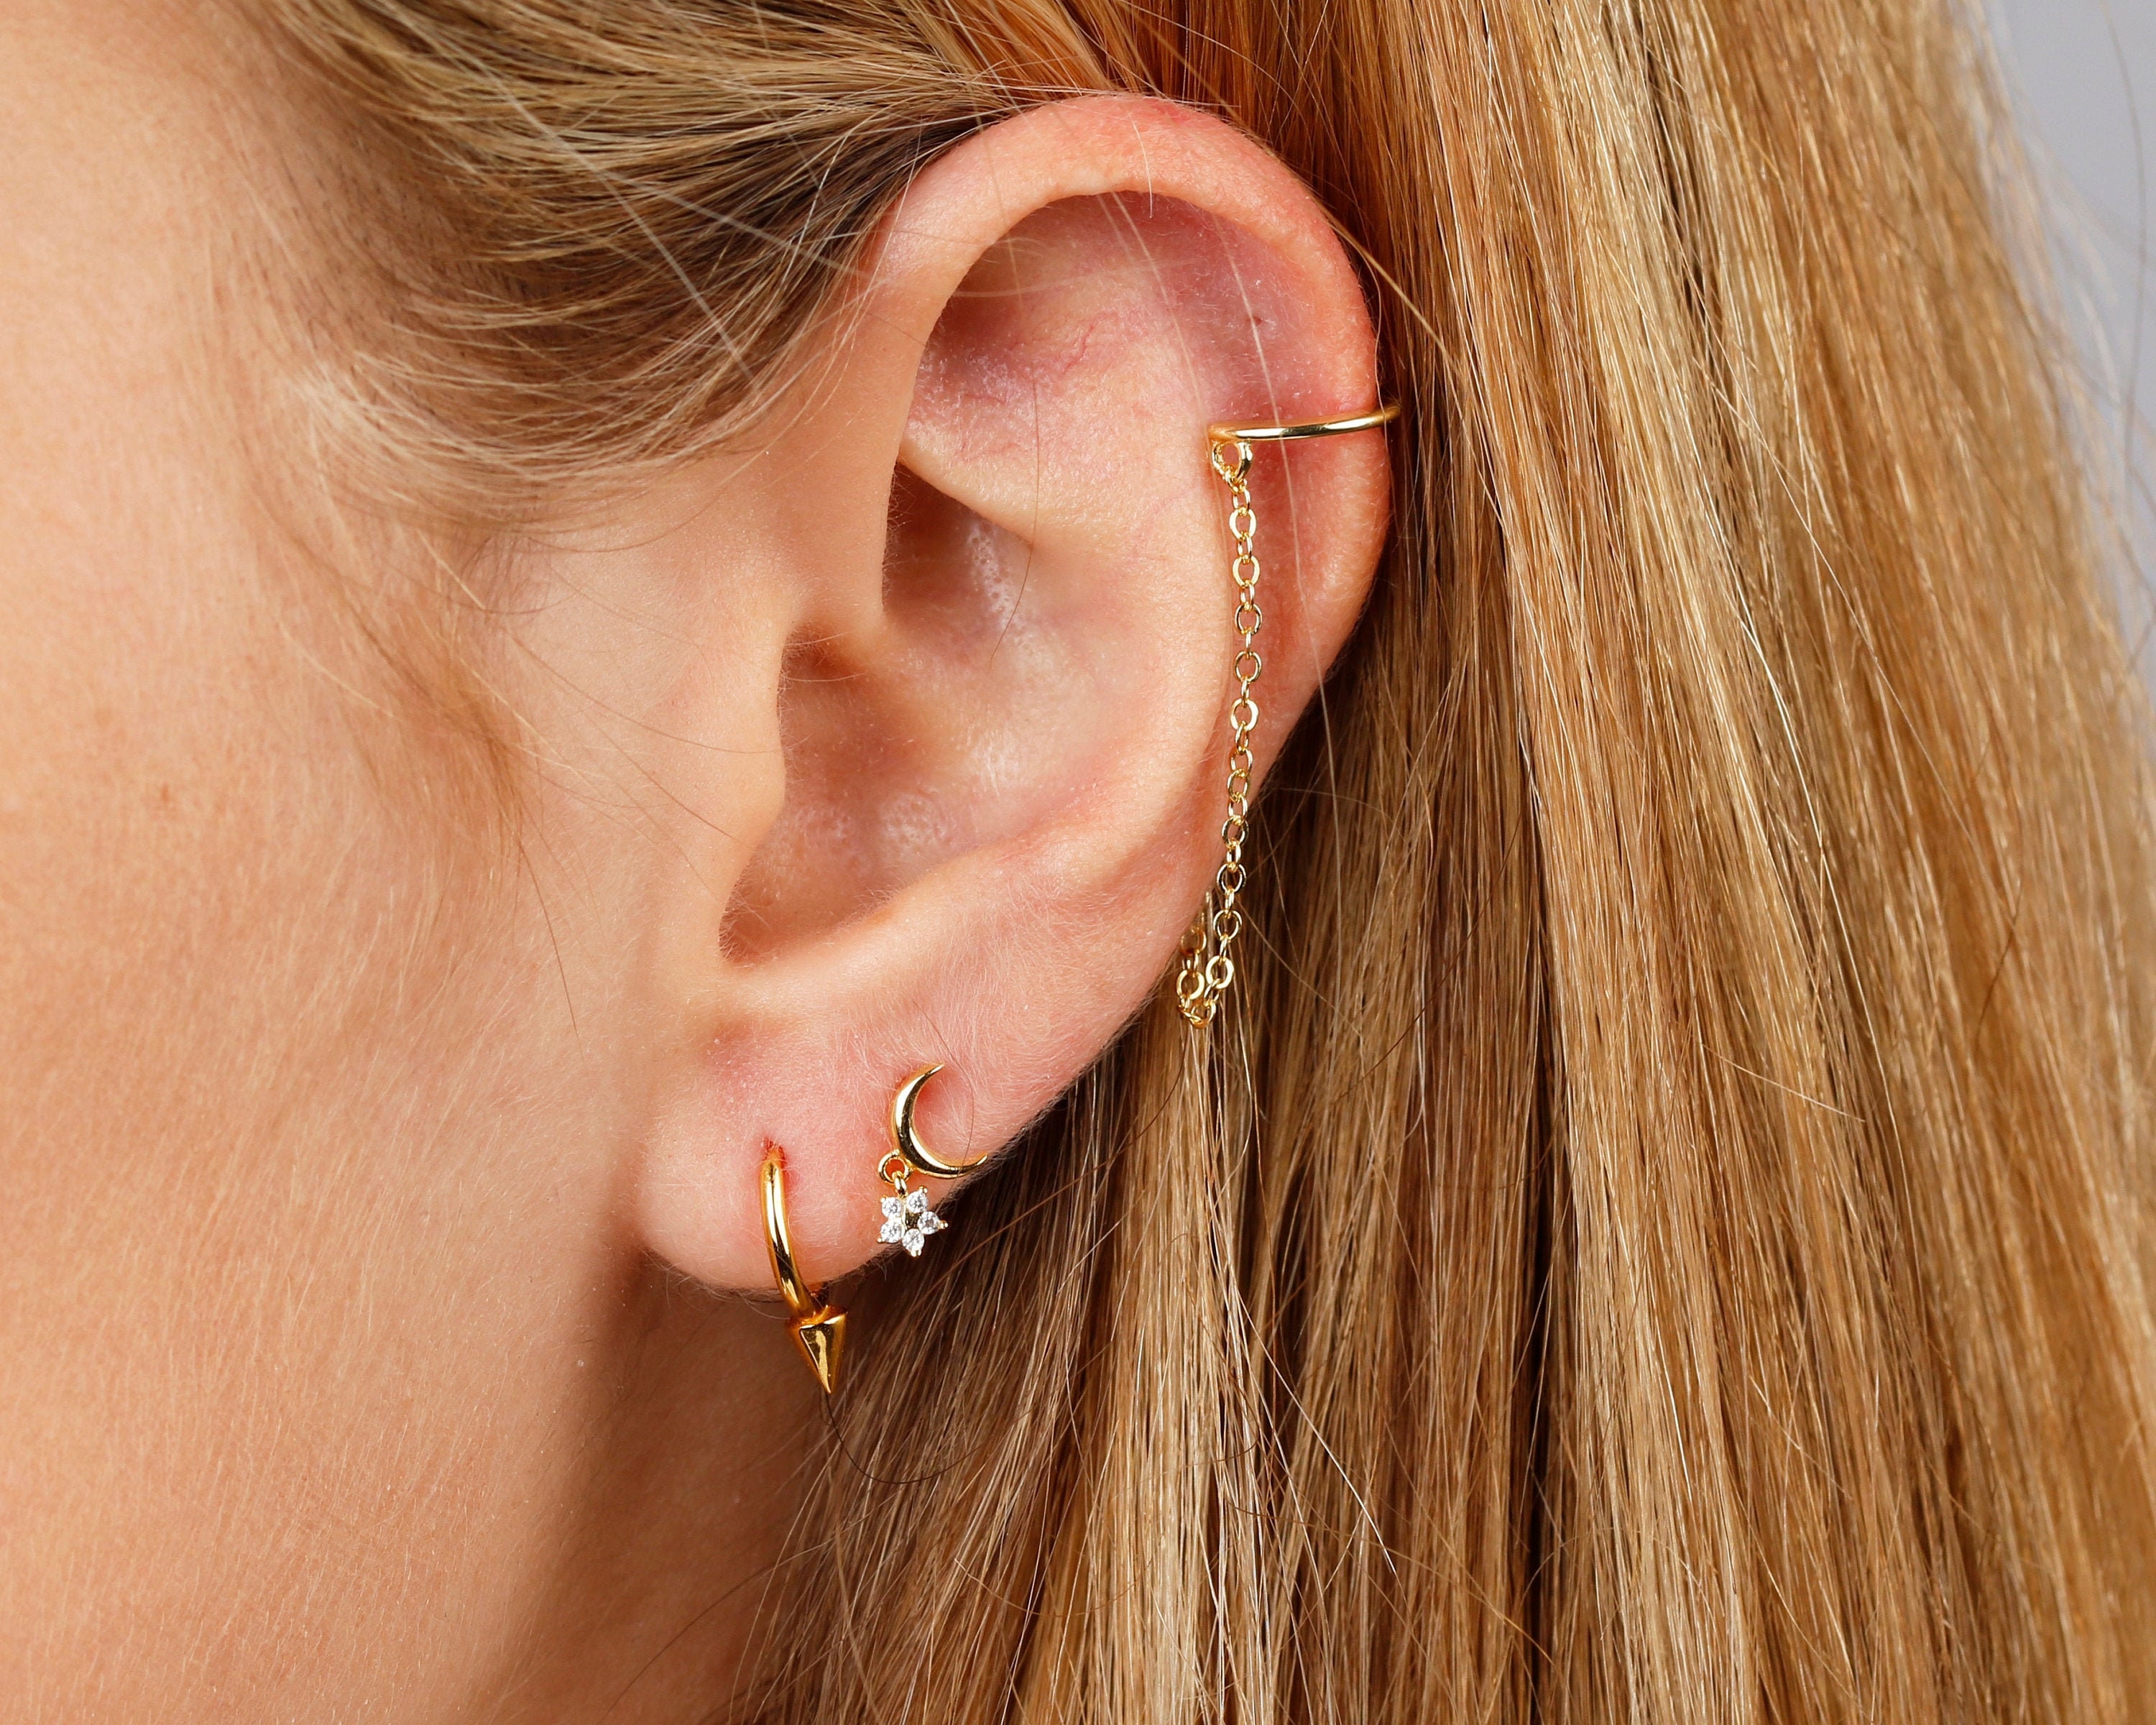 Tiny Moon Earrings With a Dangling Star Cz, Dainty Earrings, Stud Gold  Earrings, Minimalist Earrings, Delicate Earrings, Gold Earrings - Etsy